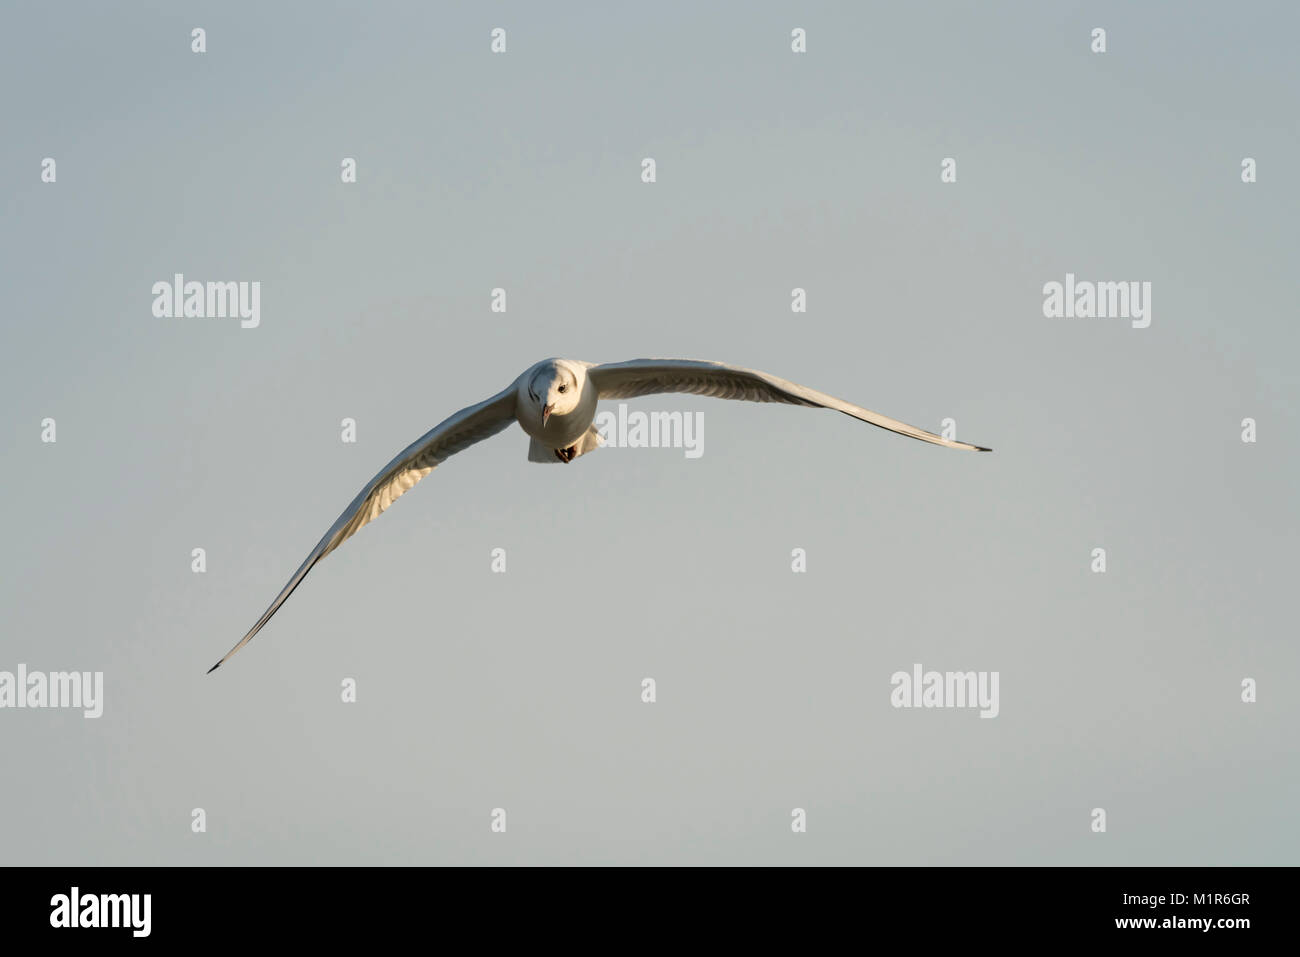 Cabeza negra, gaviotas Chroicocephalus ridibundus, invierno plumaged, en vuelo contra un cielo azul pálido. Foto de stock